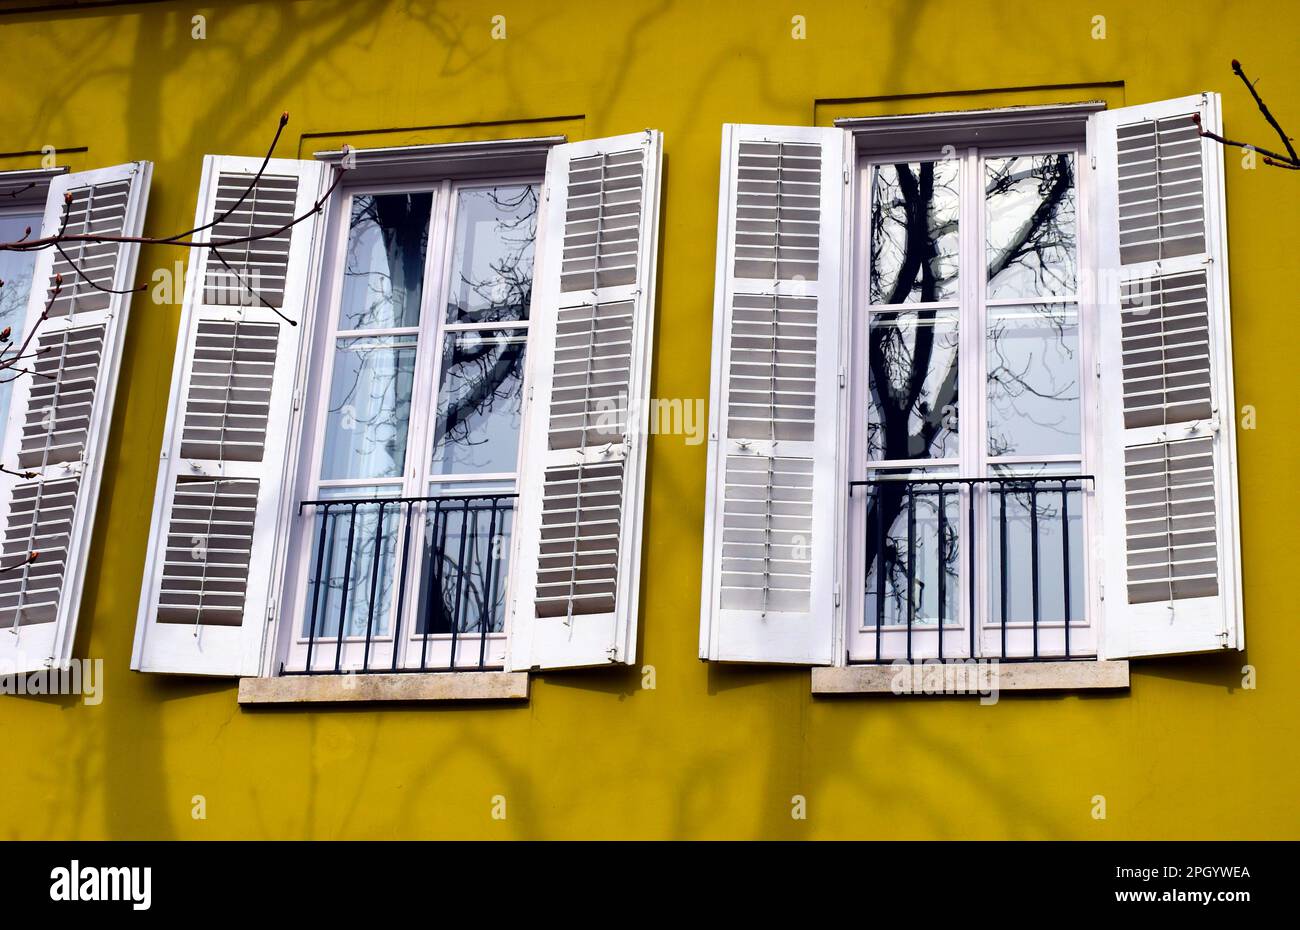 facciata esterna in stucco giallo. piccolo balcone alla francese e porta di vetro. concetto di proprietà domestica. balaustra orizzontale in acciaio. picchetti a barra metallica Foto Stock